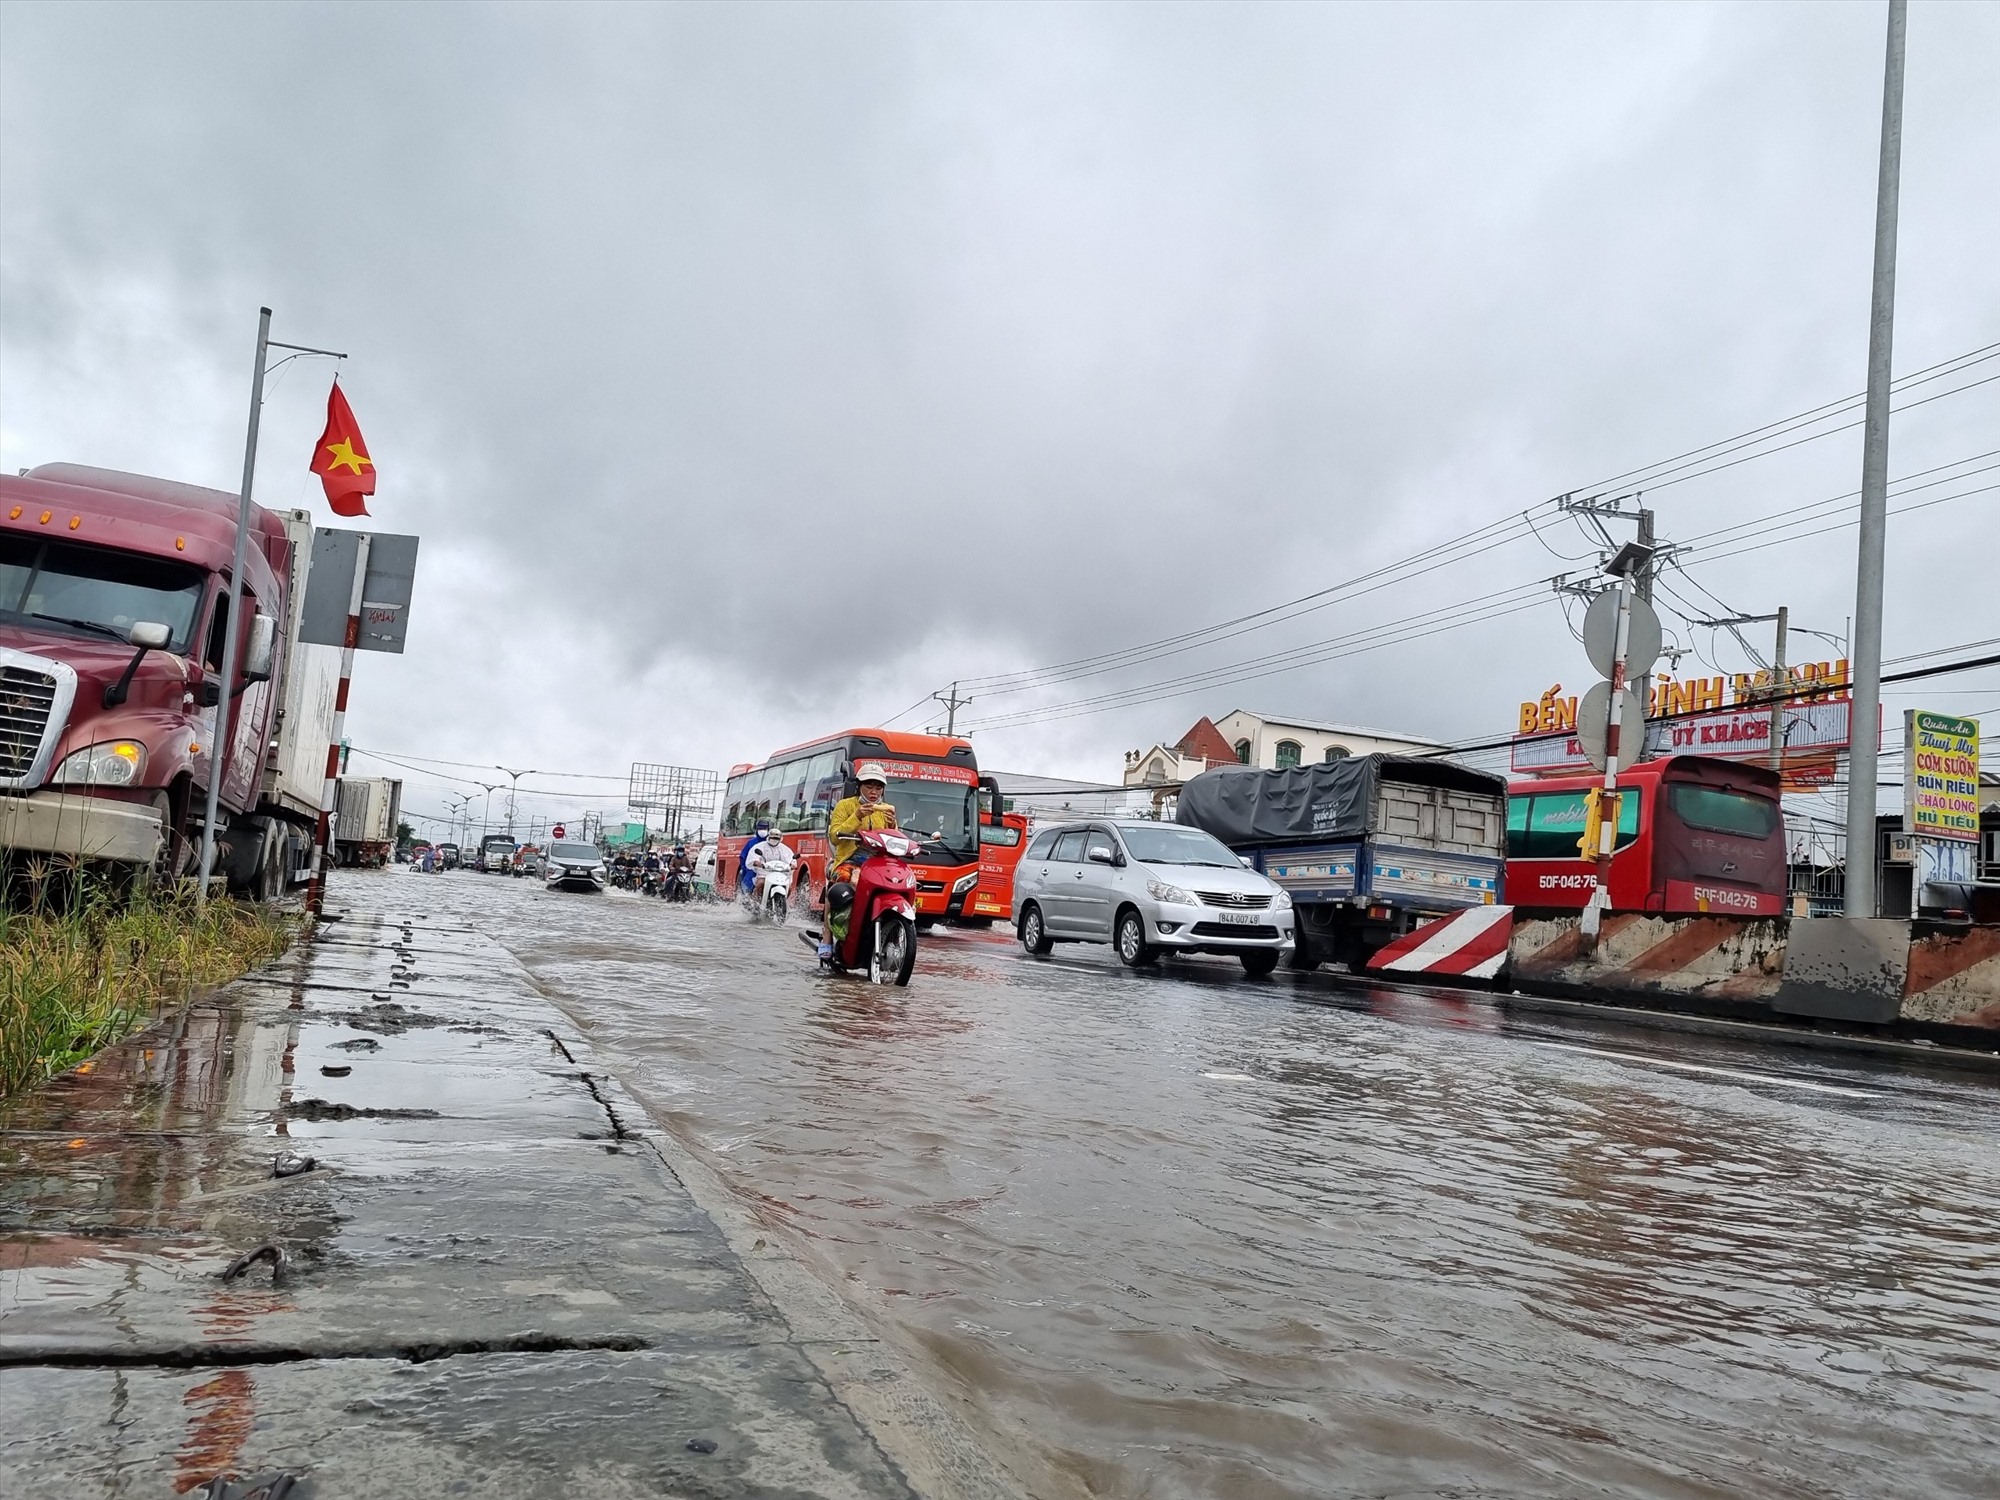 Triều cường, mưa lớn đã làm ngập 1 đoạn đường dài gần 500m trên tuyến QL 1A qua xã Thuận An, thị xã Bình Minh, tỉnh Vĩnh Long. Ảnh: Hoàng Lộc